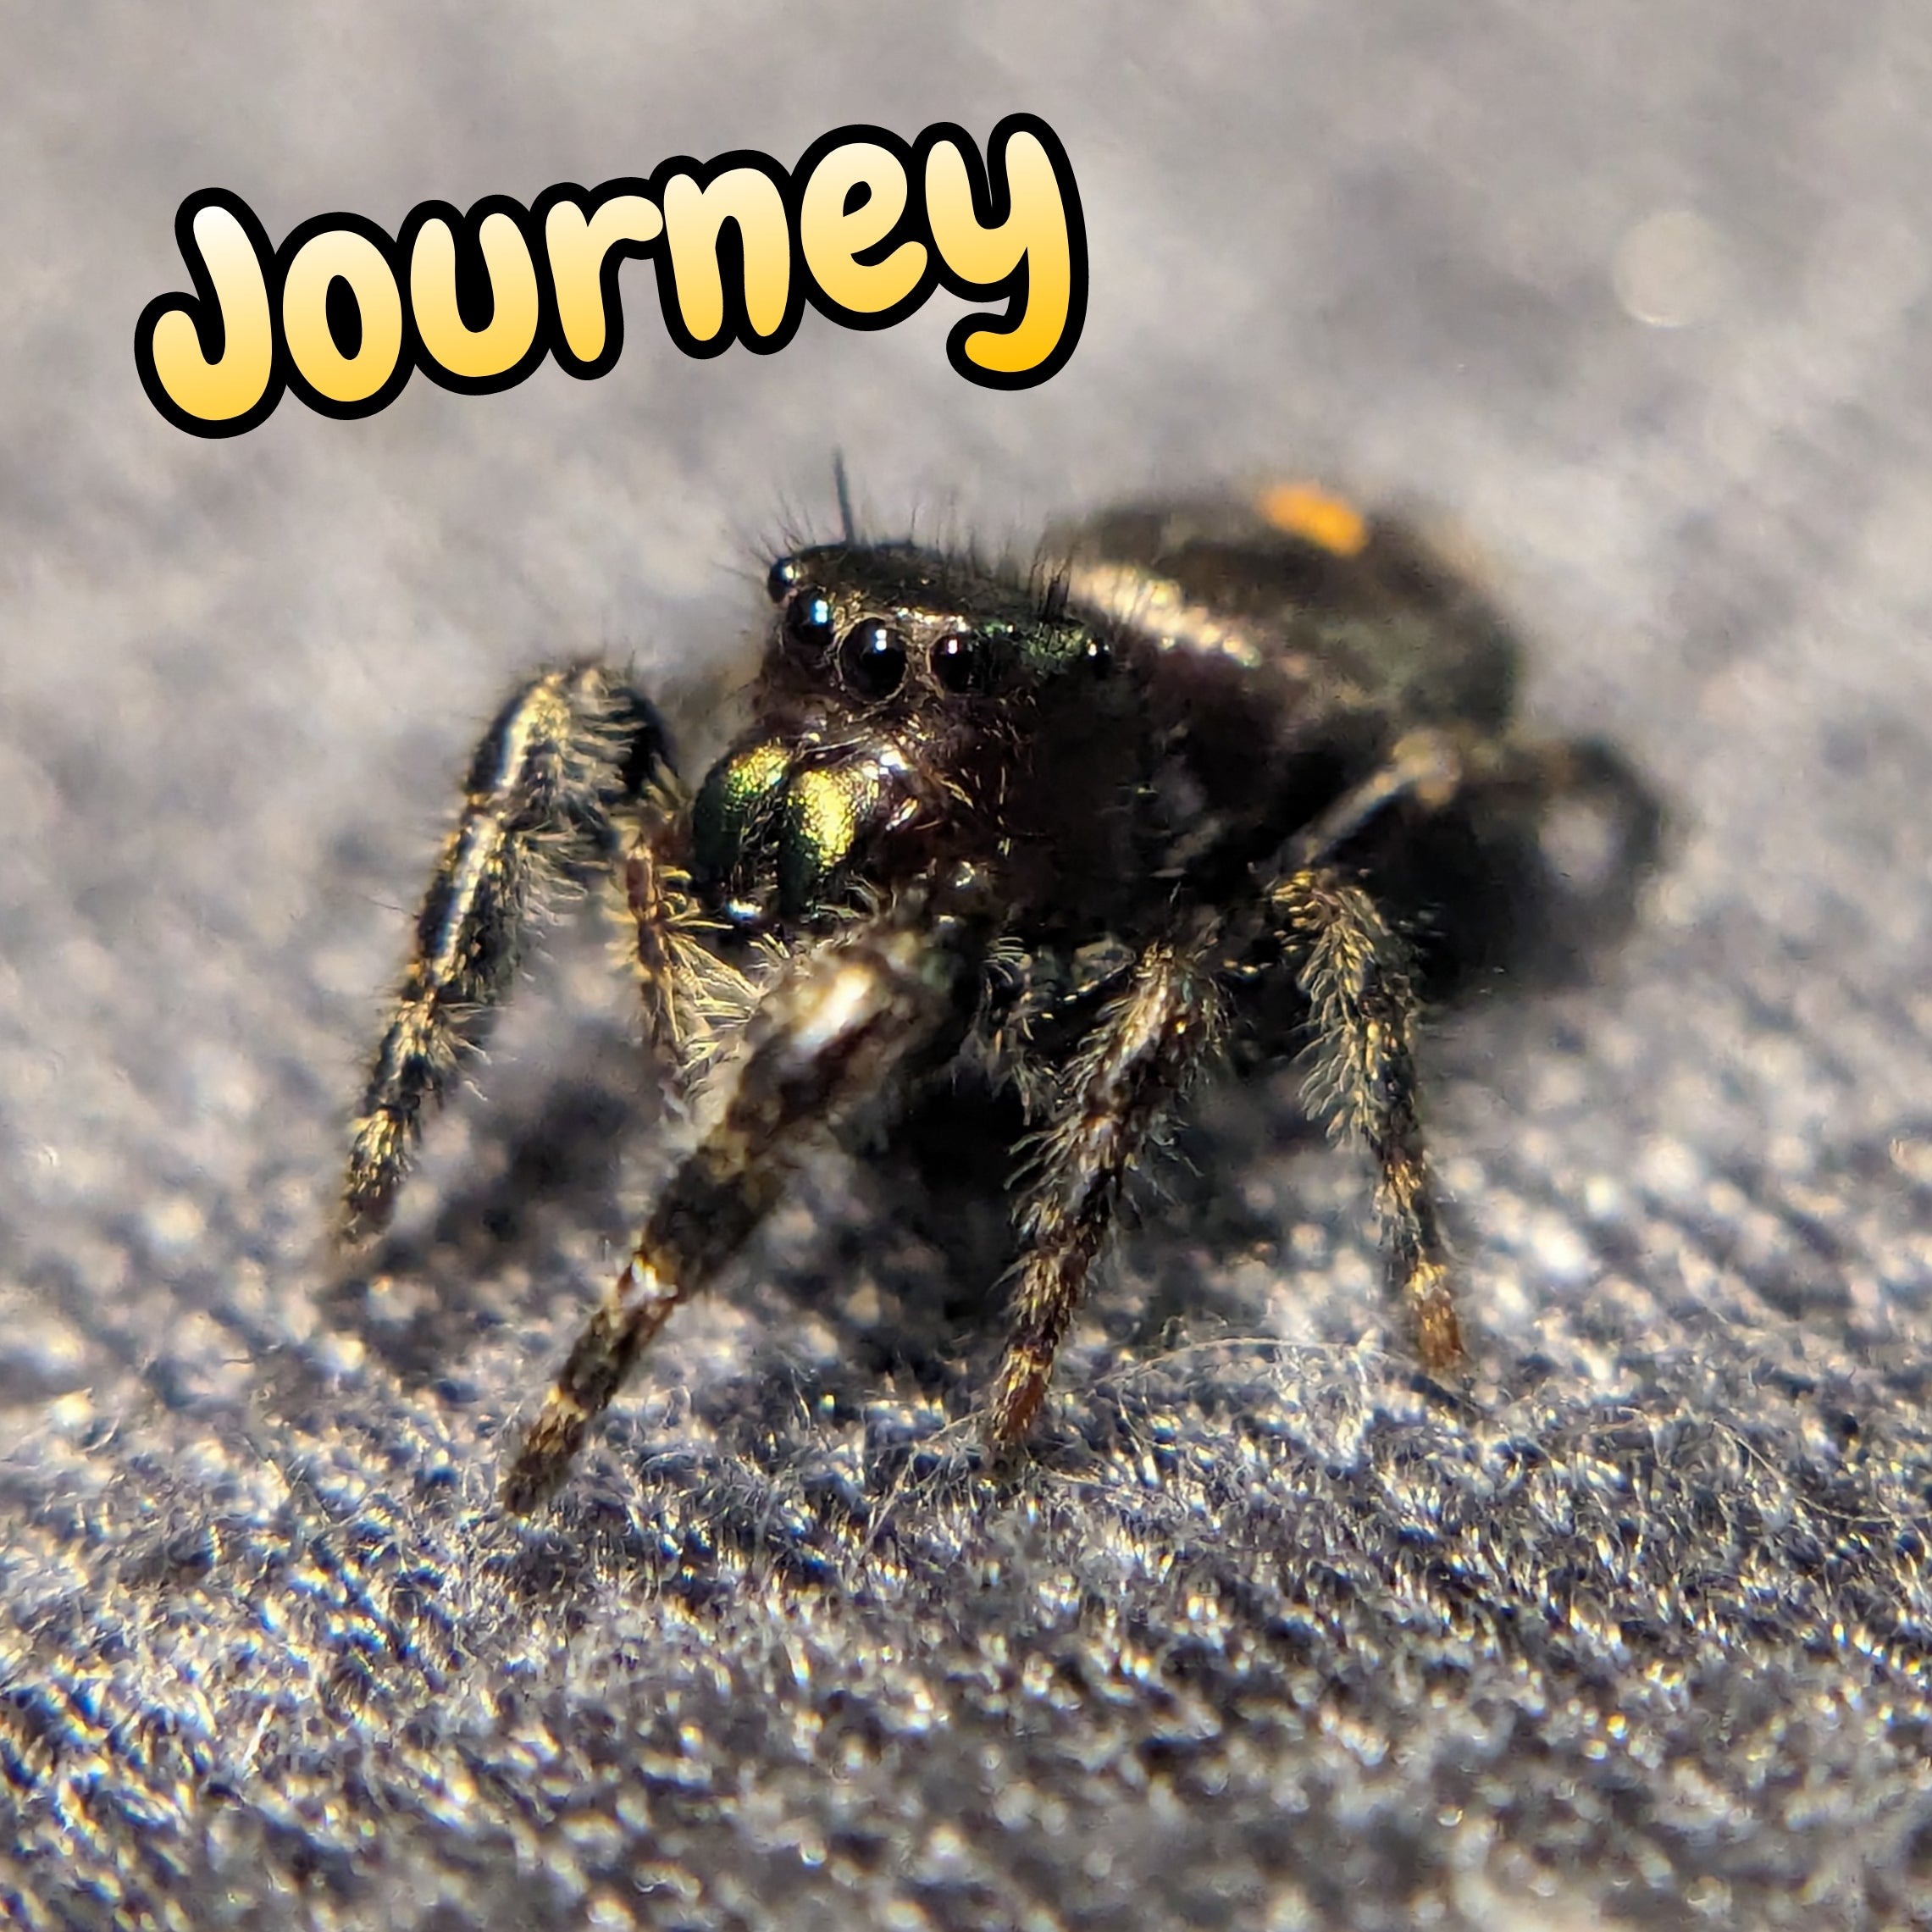 Audax Jumping Spider "Journey"